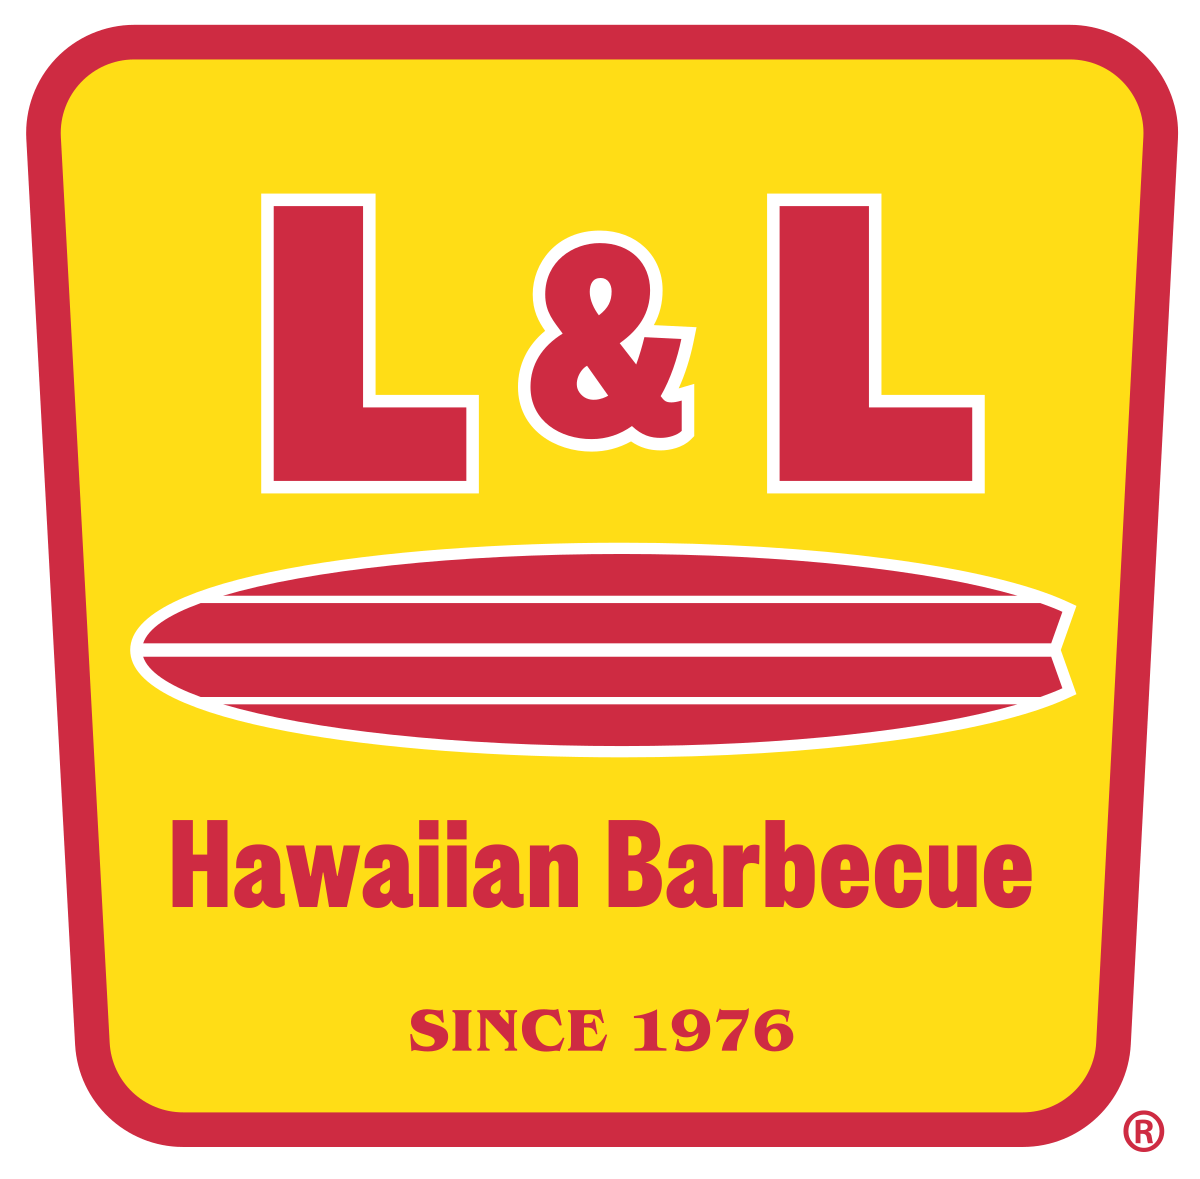 Red Hawaiian Logo - L&L Hawaiian Barbecue